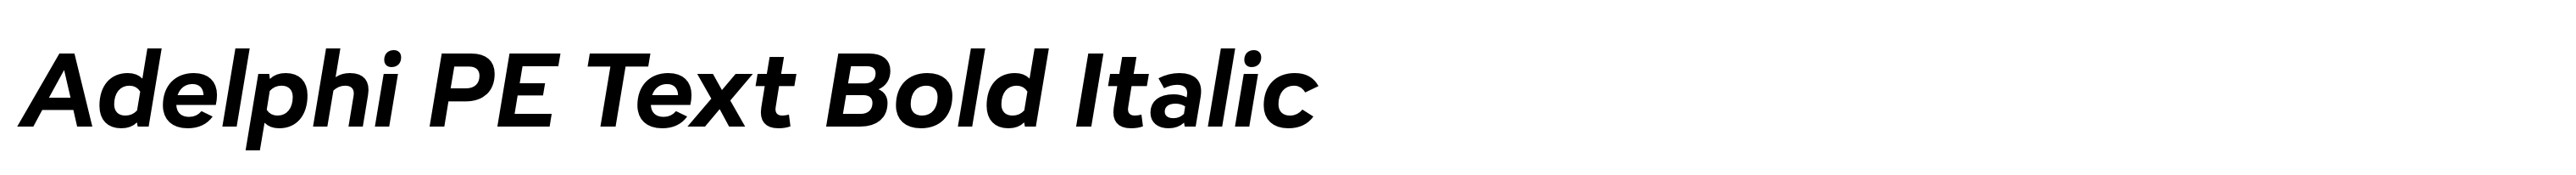 Adelphi PE Text Bold Italic